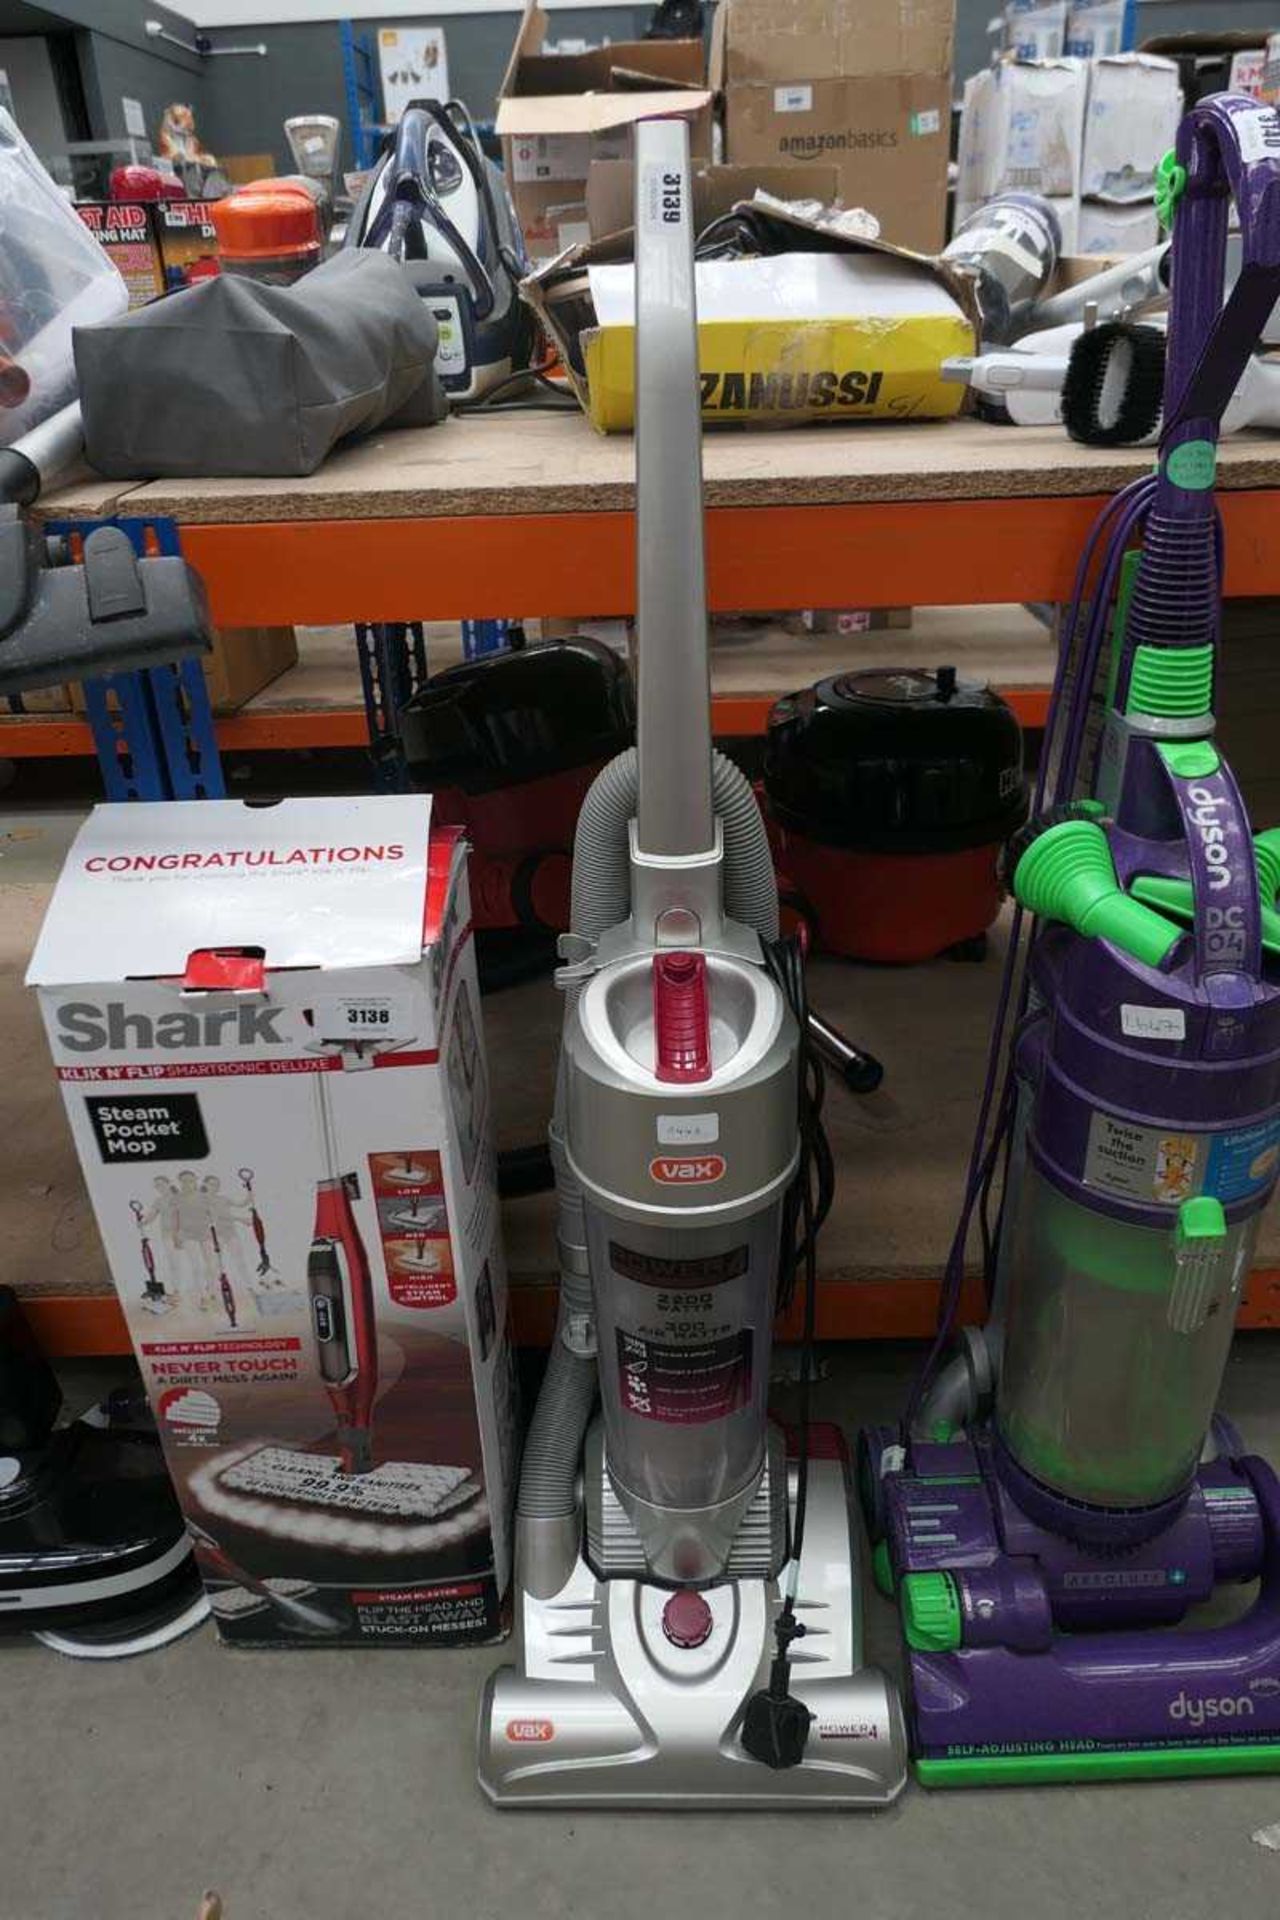 Upright Vax vacuum cleaner